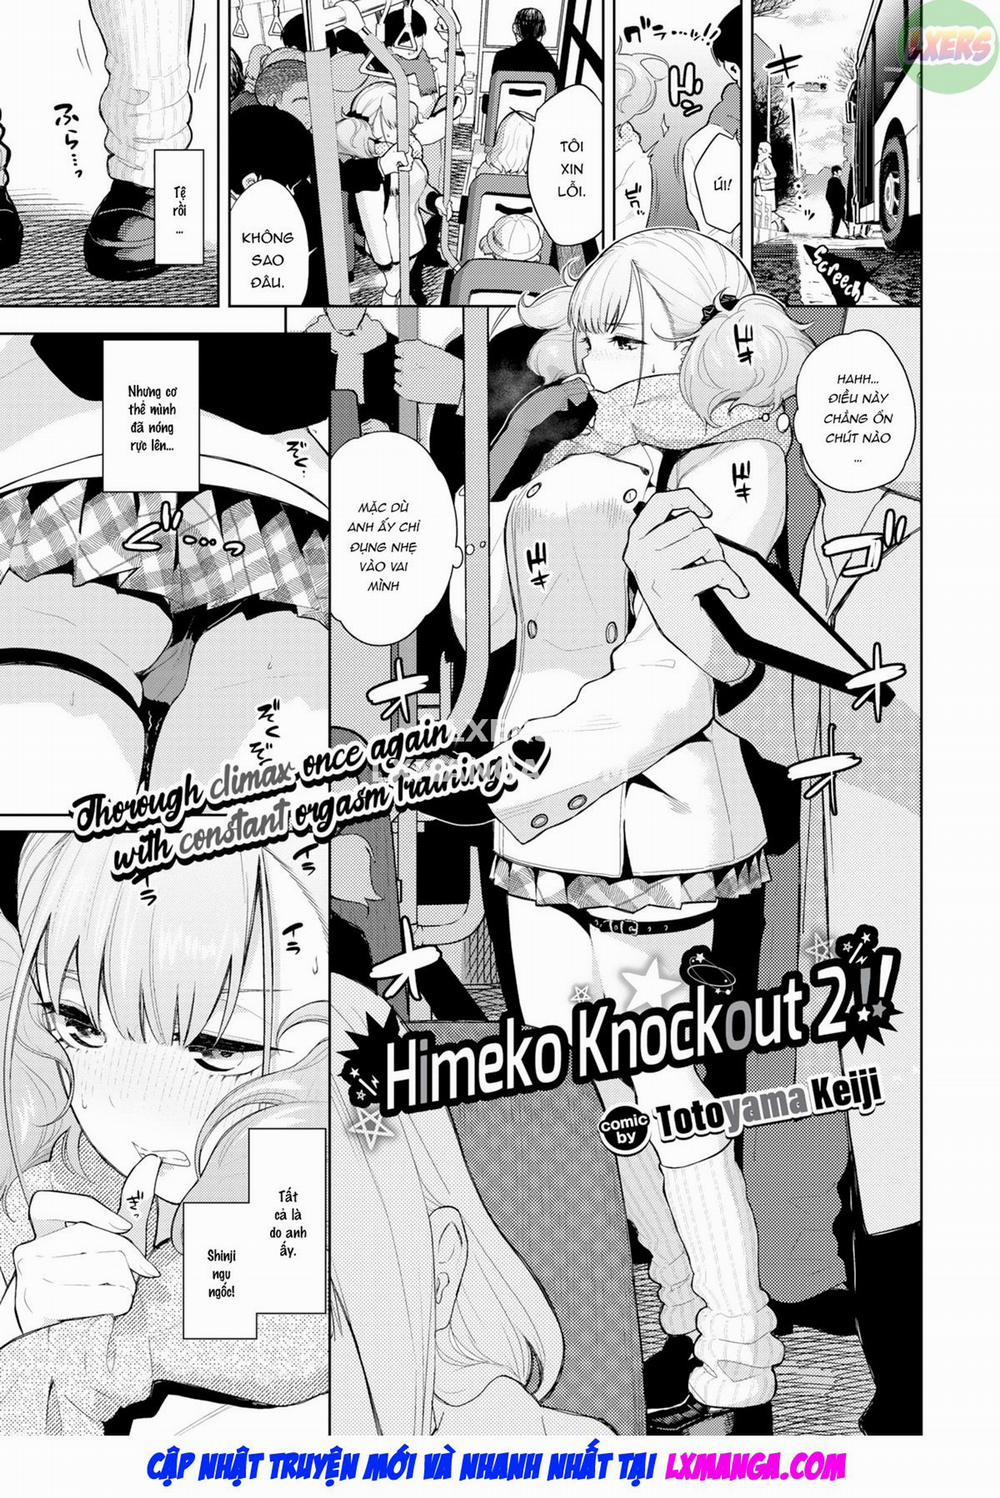 Himeko Knock Out!! Chương 2 END Trang 4